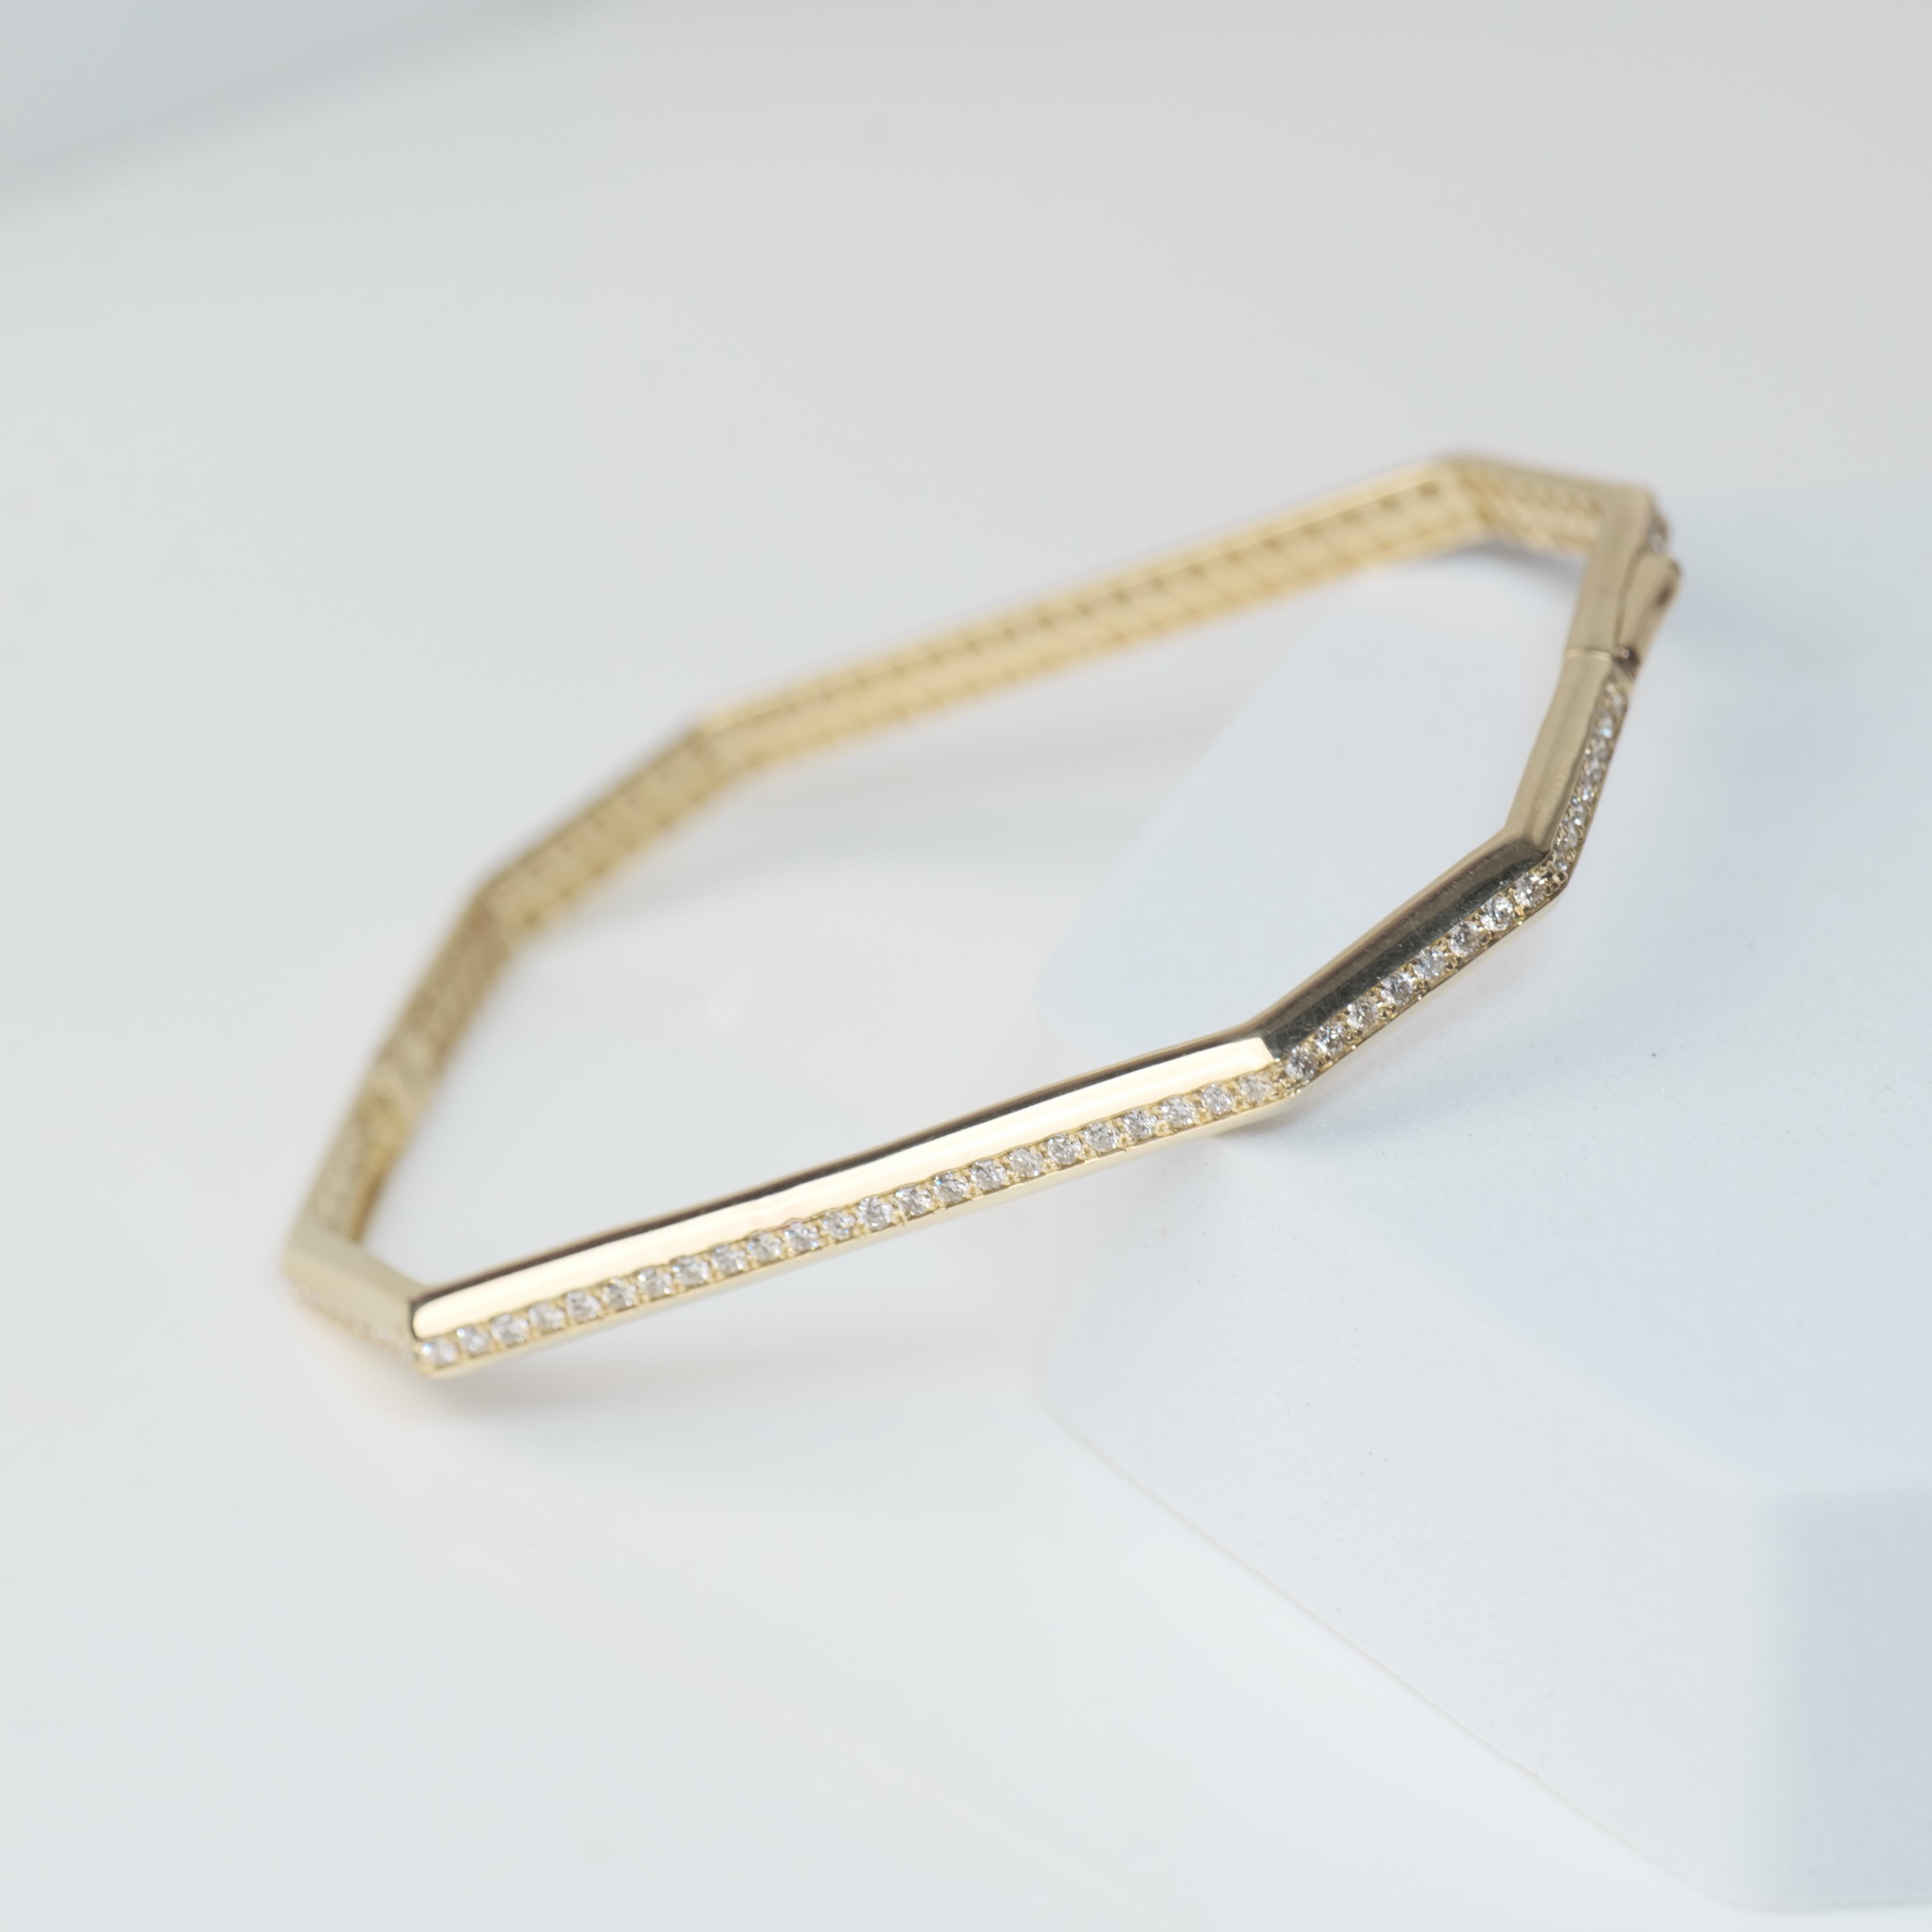 Octagonal Shape Bangle Bracelet Set in 18k Solid Gold For Sale 5